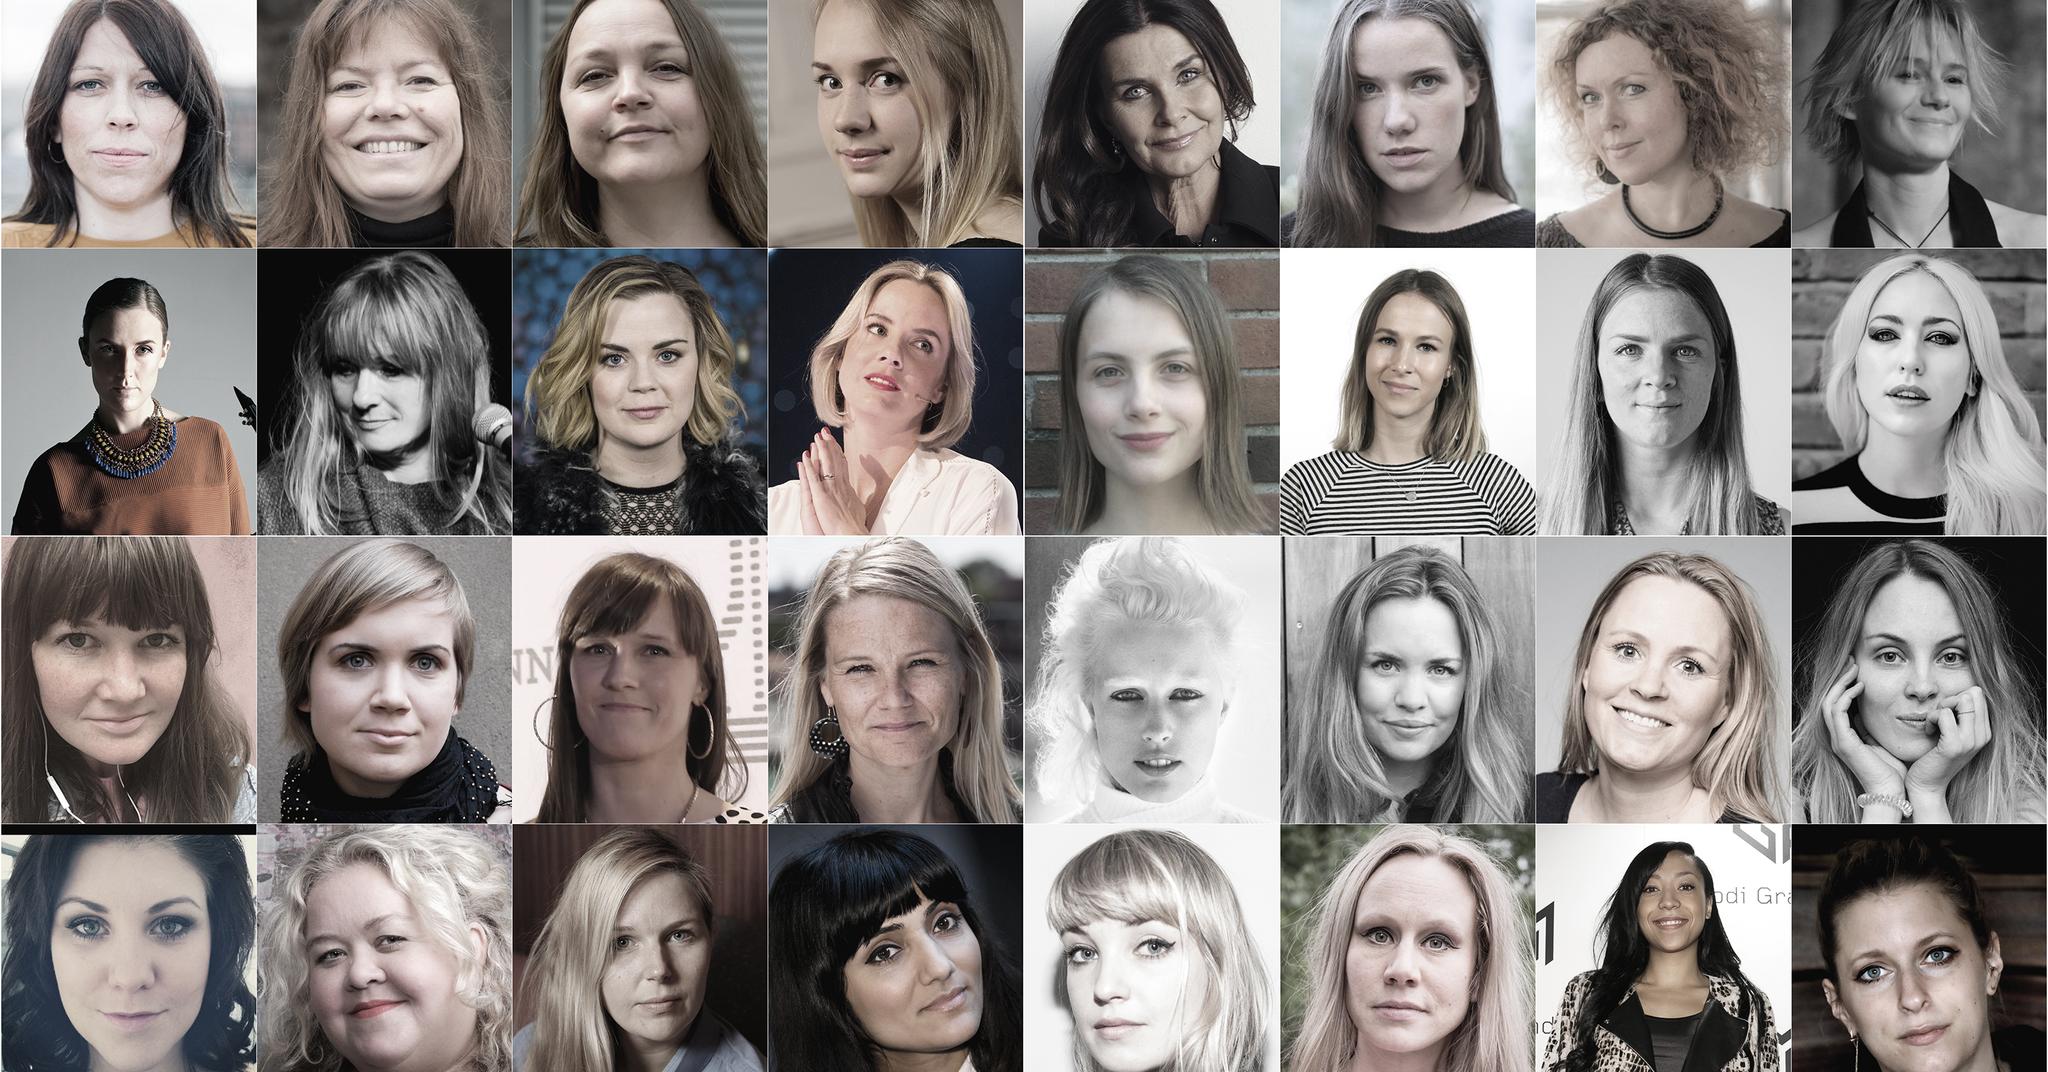 Over 1000 kvinner i norsk musikkbransje krever nulltoleranse for seksuell trakassering. Bildene i saken er ikke knyttet til enkelthistoriene.